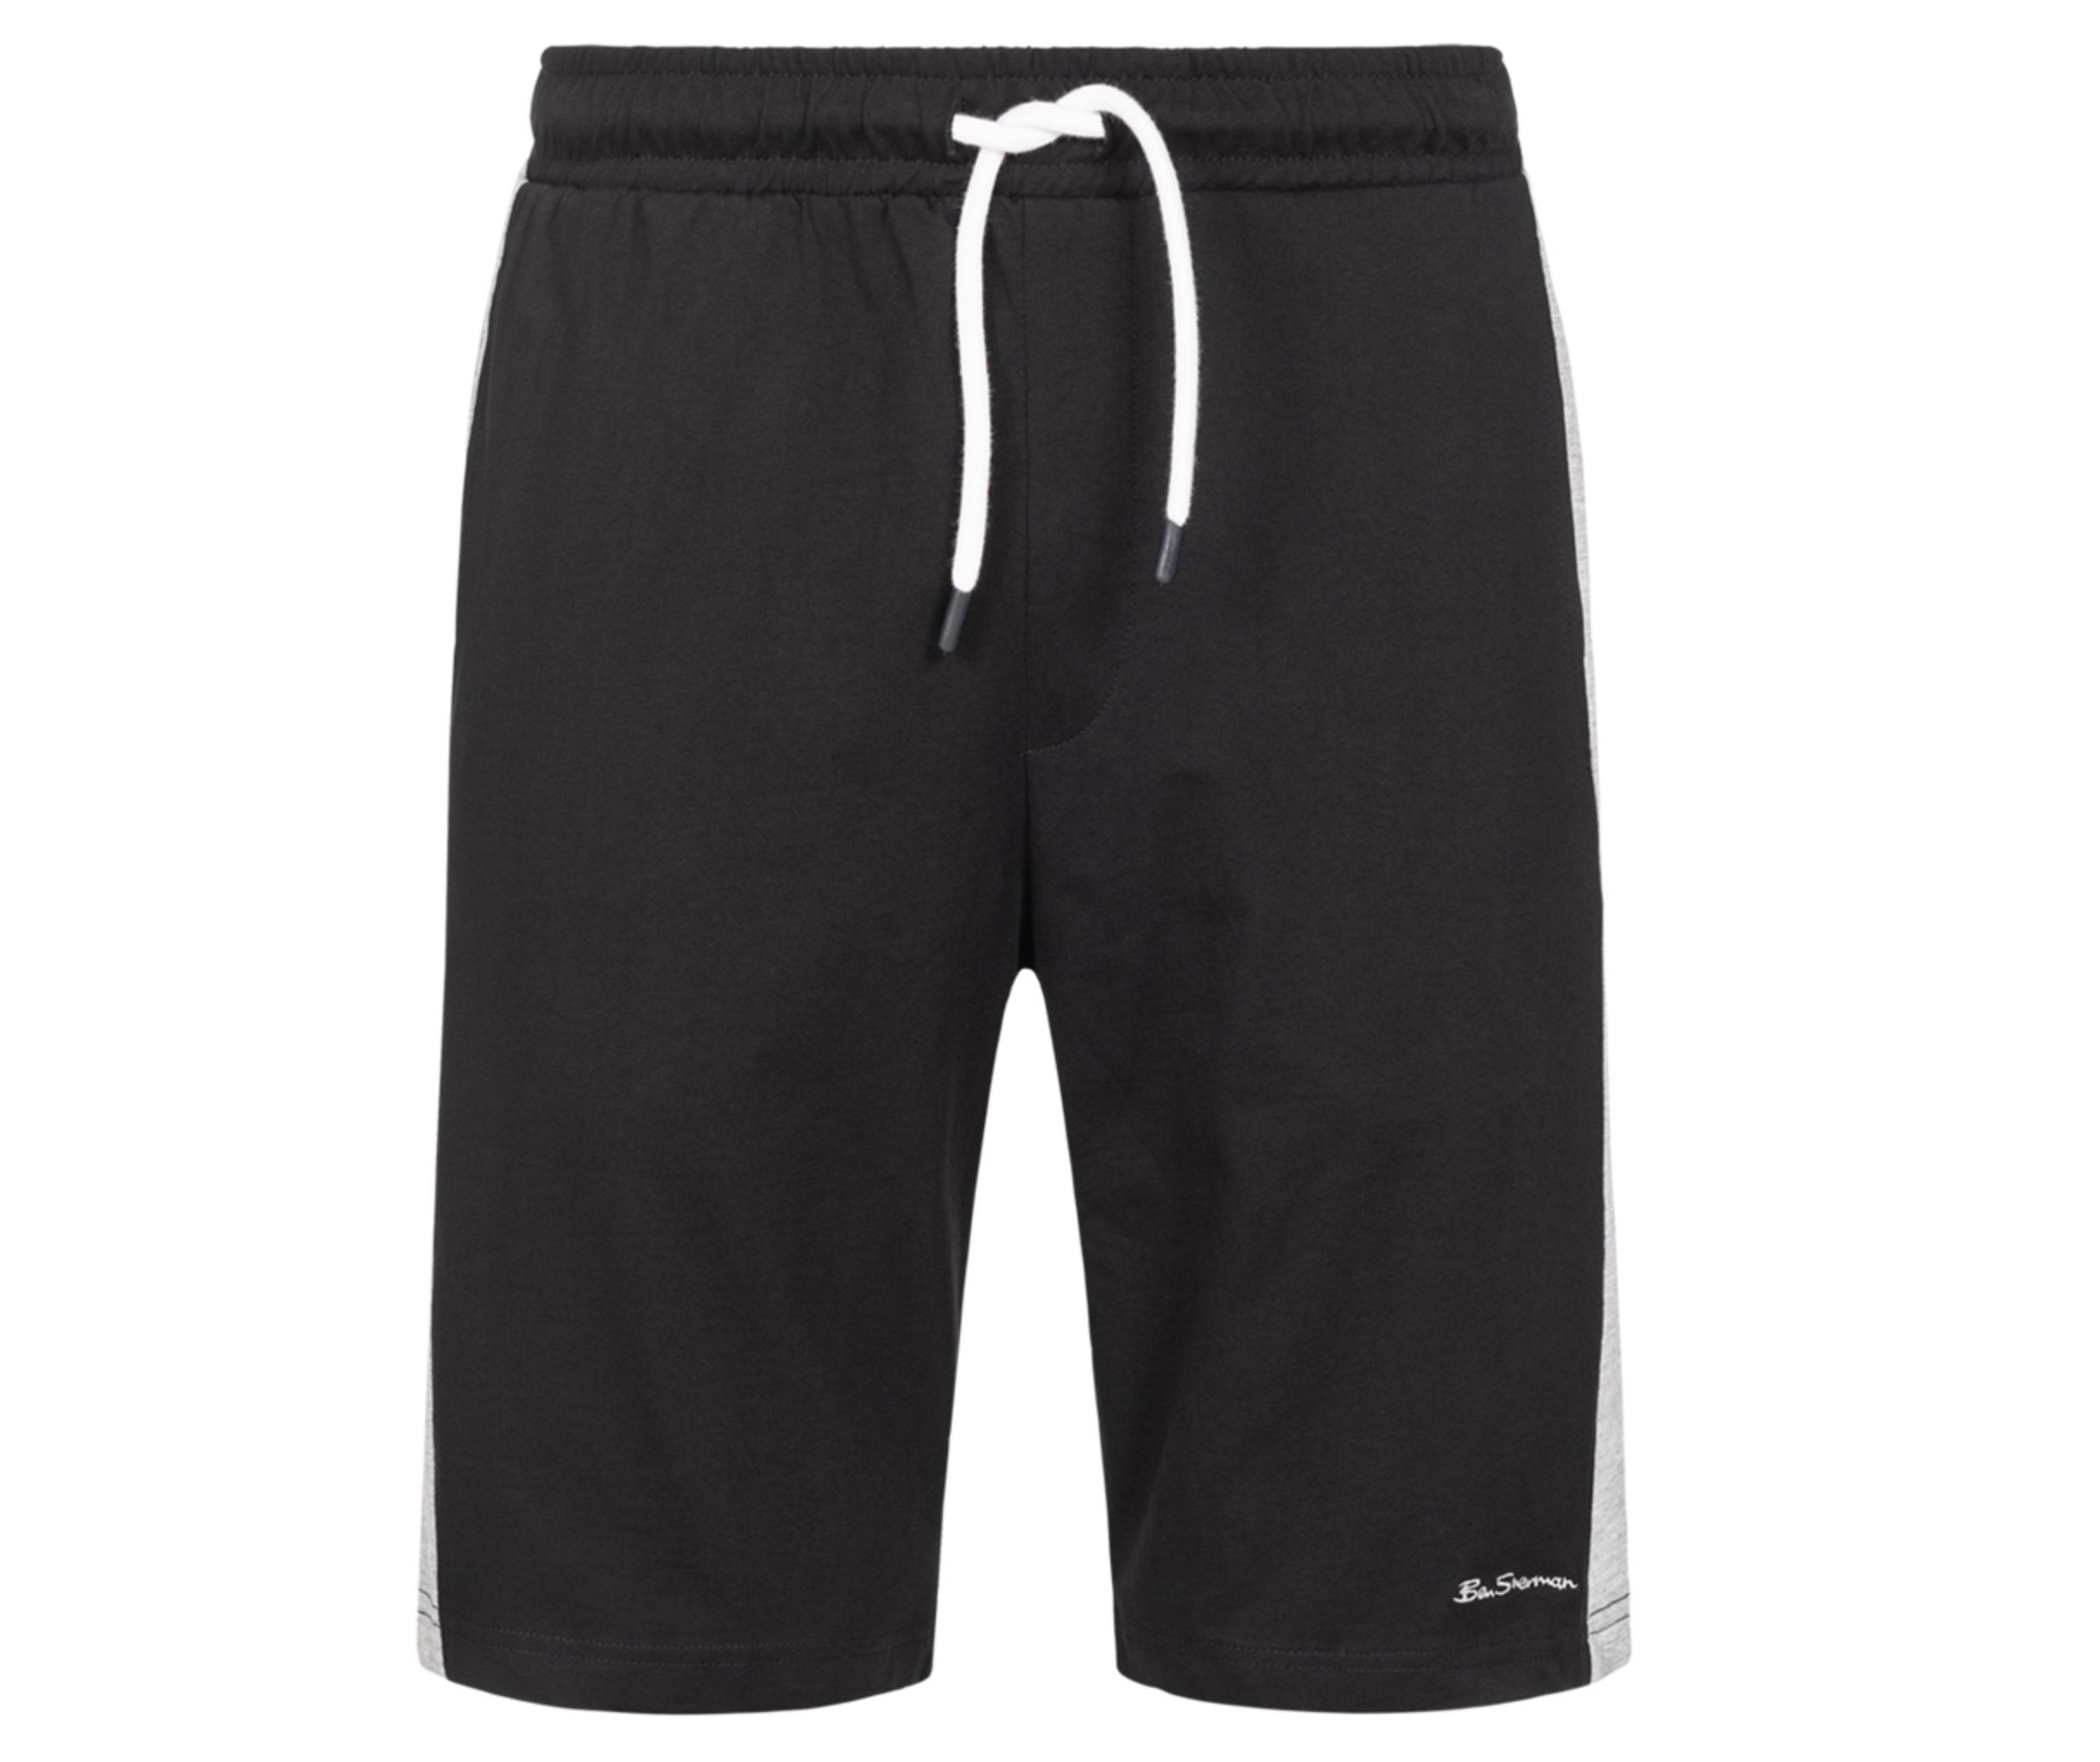 Ben Sherman Herren Sweat Shorts für 9,50€ (statt 17€)